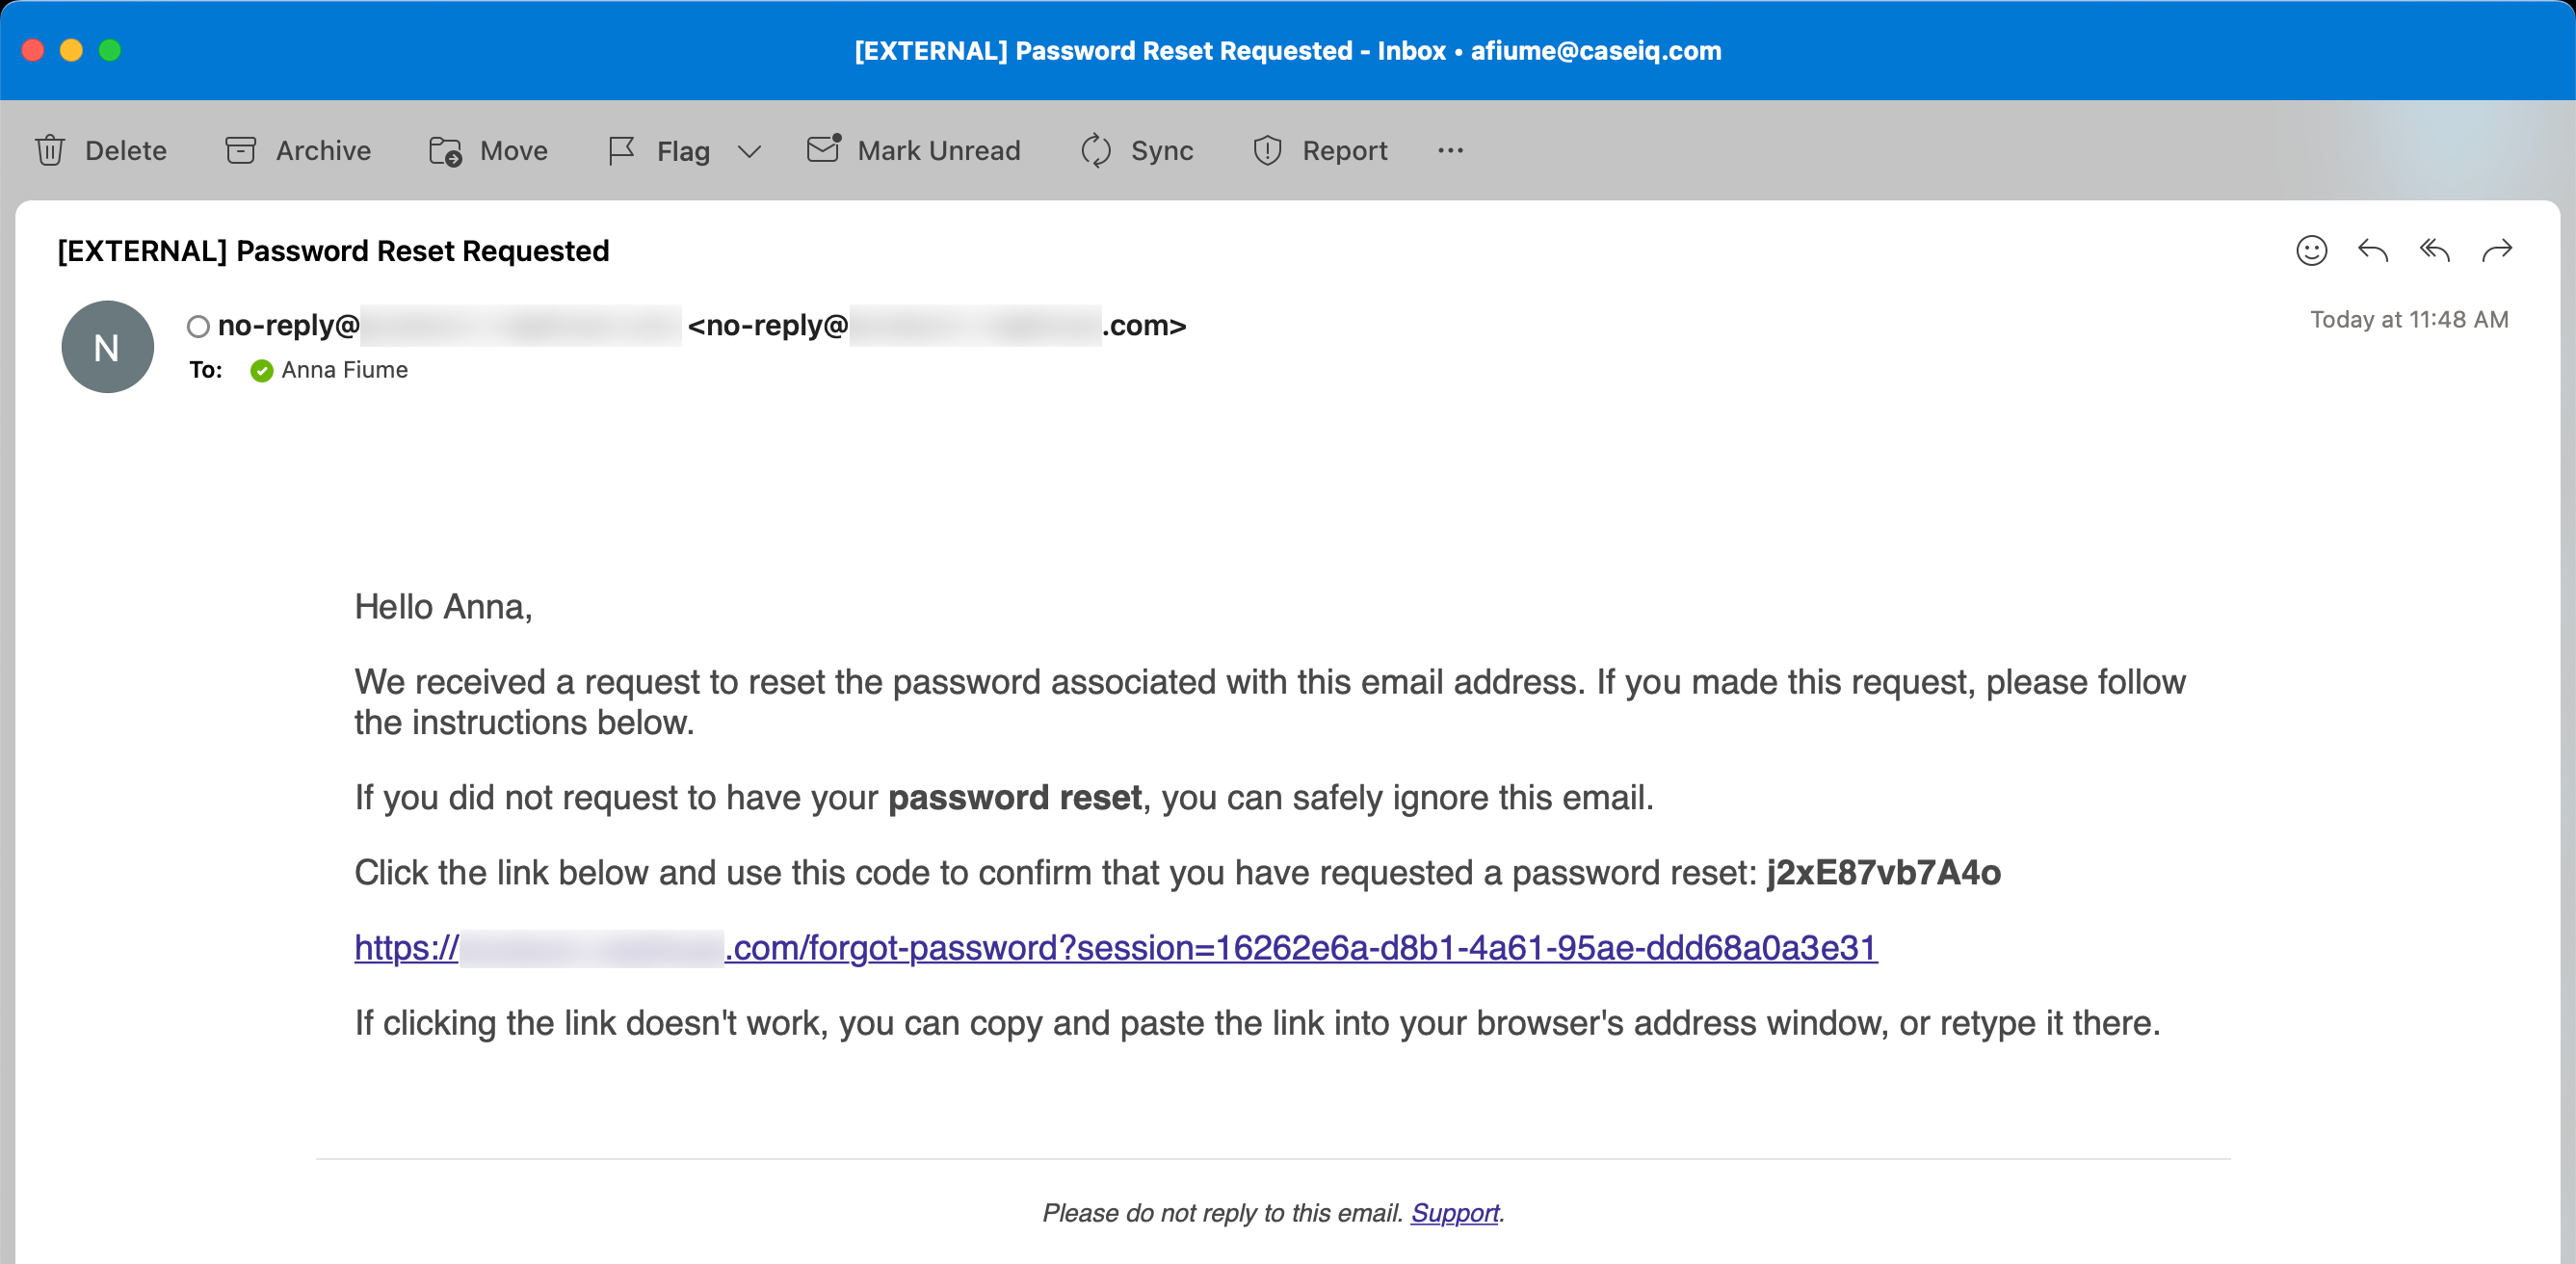 L’e-mail de demande de réinitialisation du mot de passe.